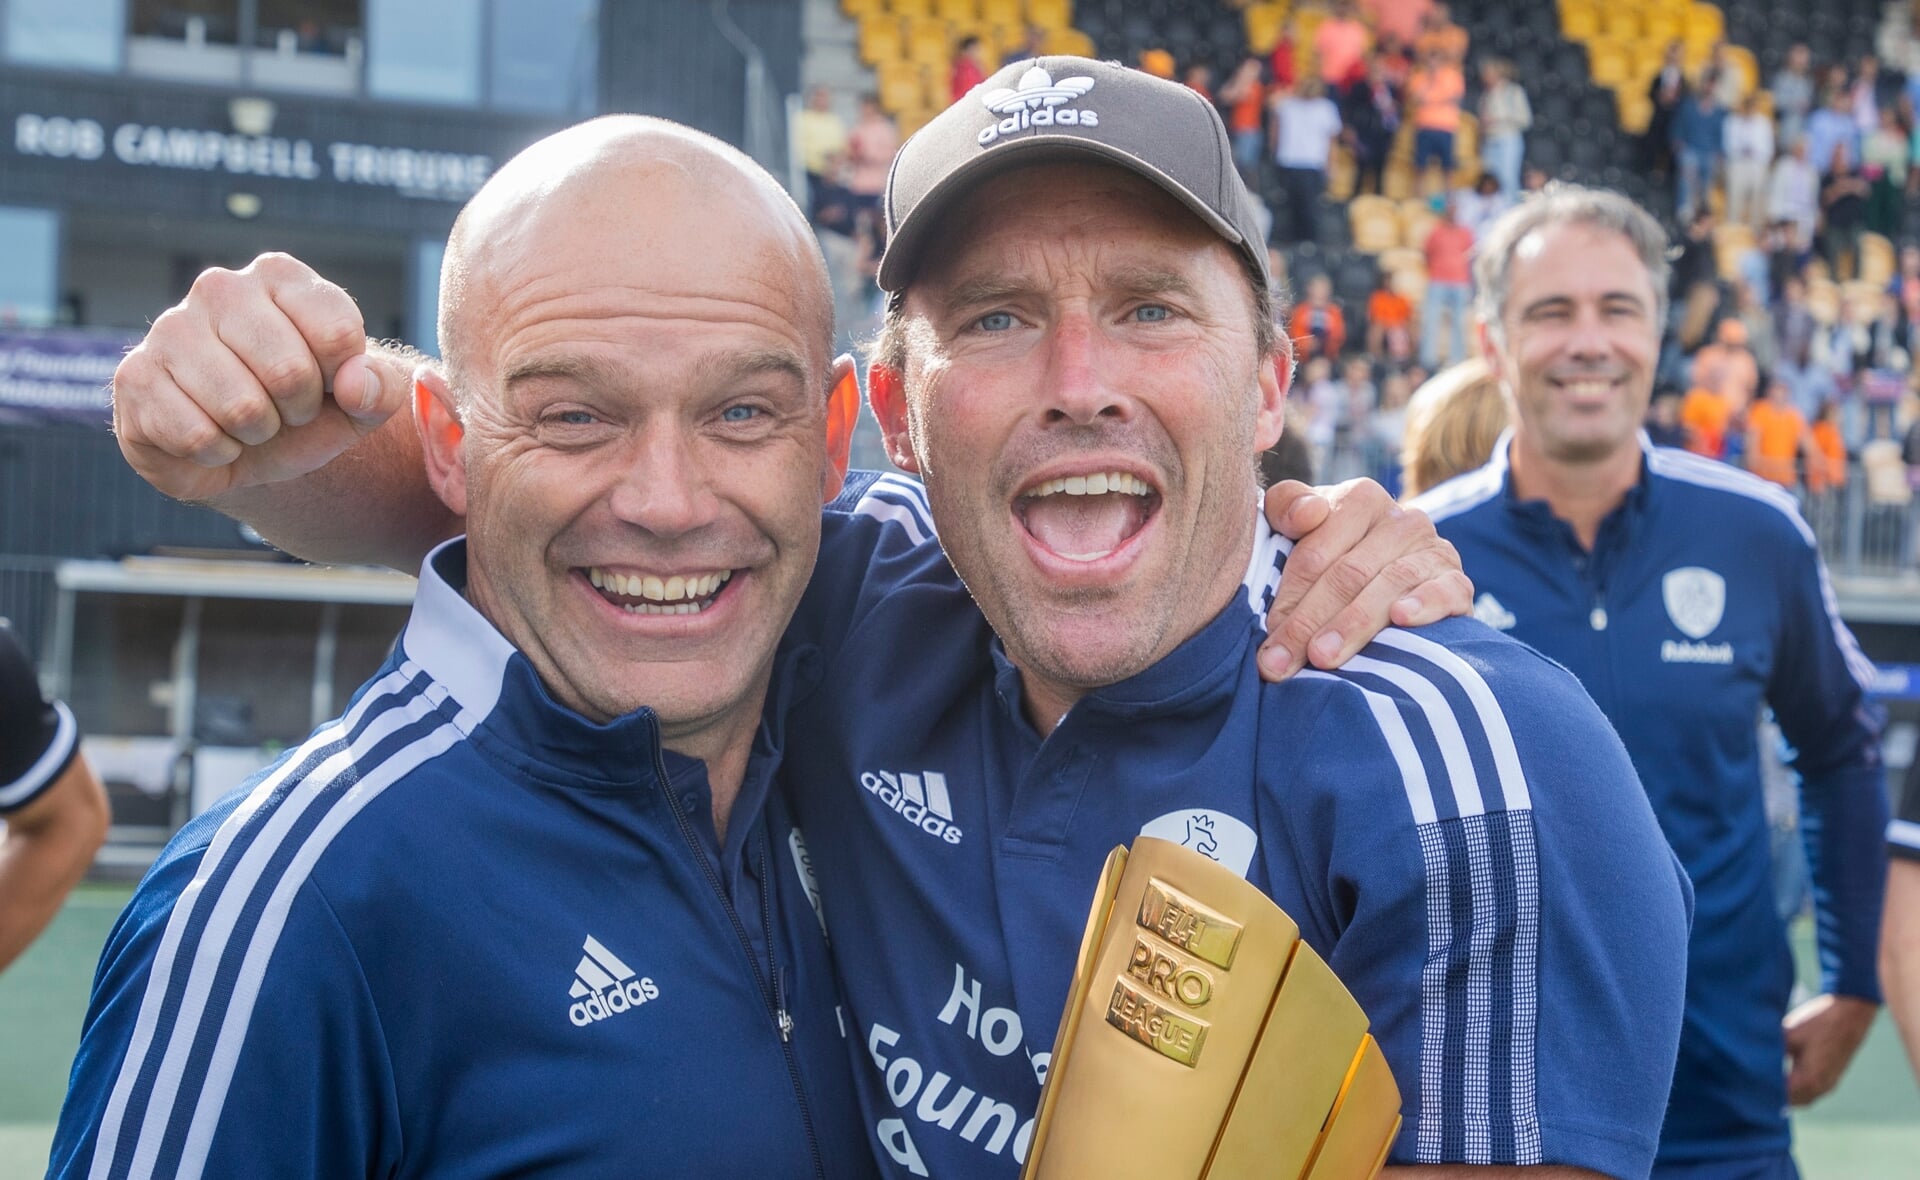 Bondscoach Jeroen Delmee (rechts) en assistent bondscoach Eric Verboom wonnen vorig jaar nog Pro League. Tijdens het WK werd brons behaald.